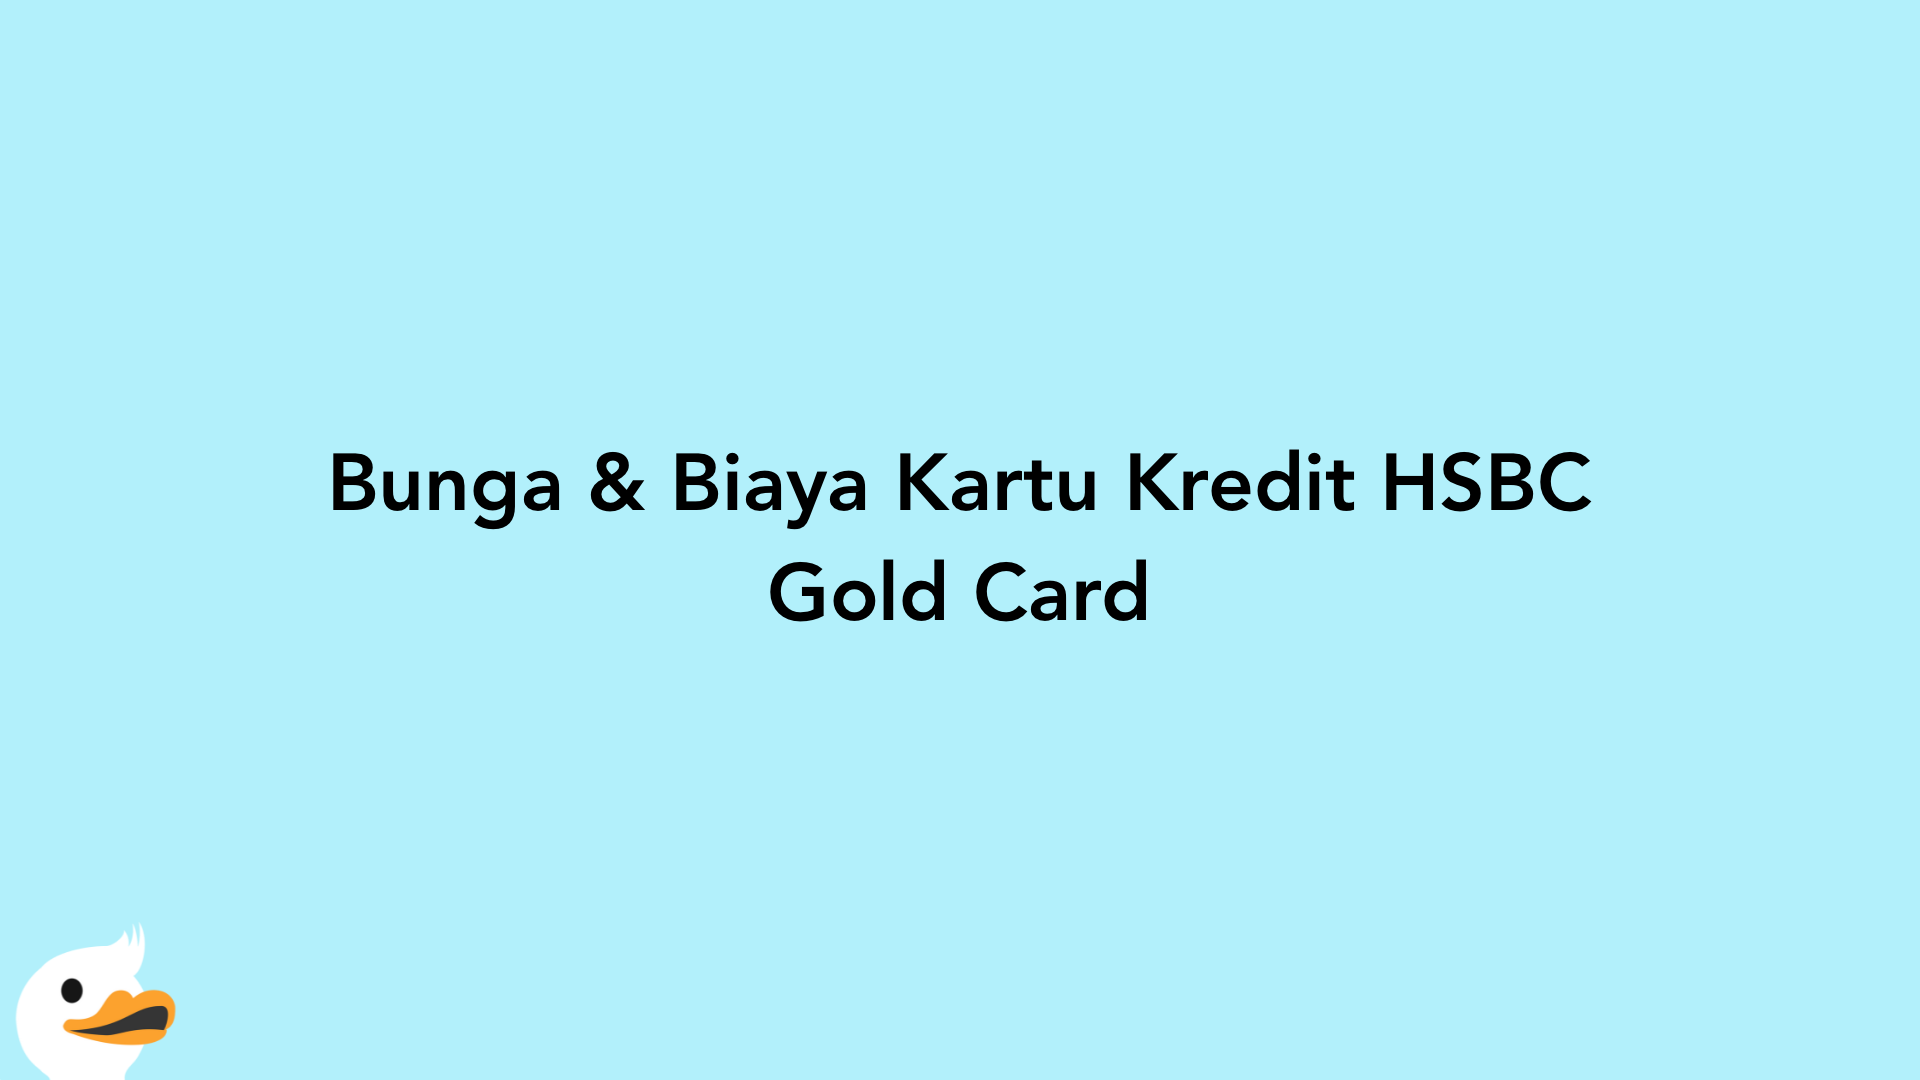 Bunga & Biaya Kartu Kredit HSBC Gold Card